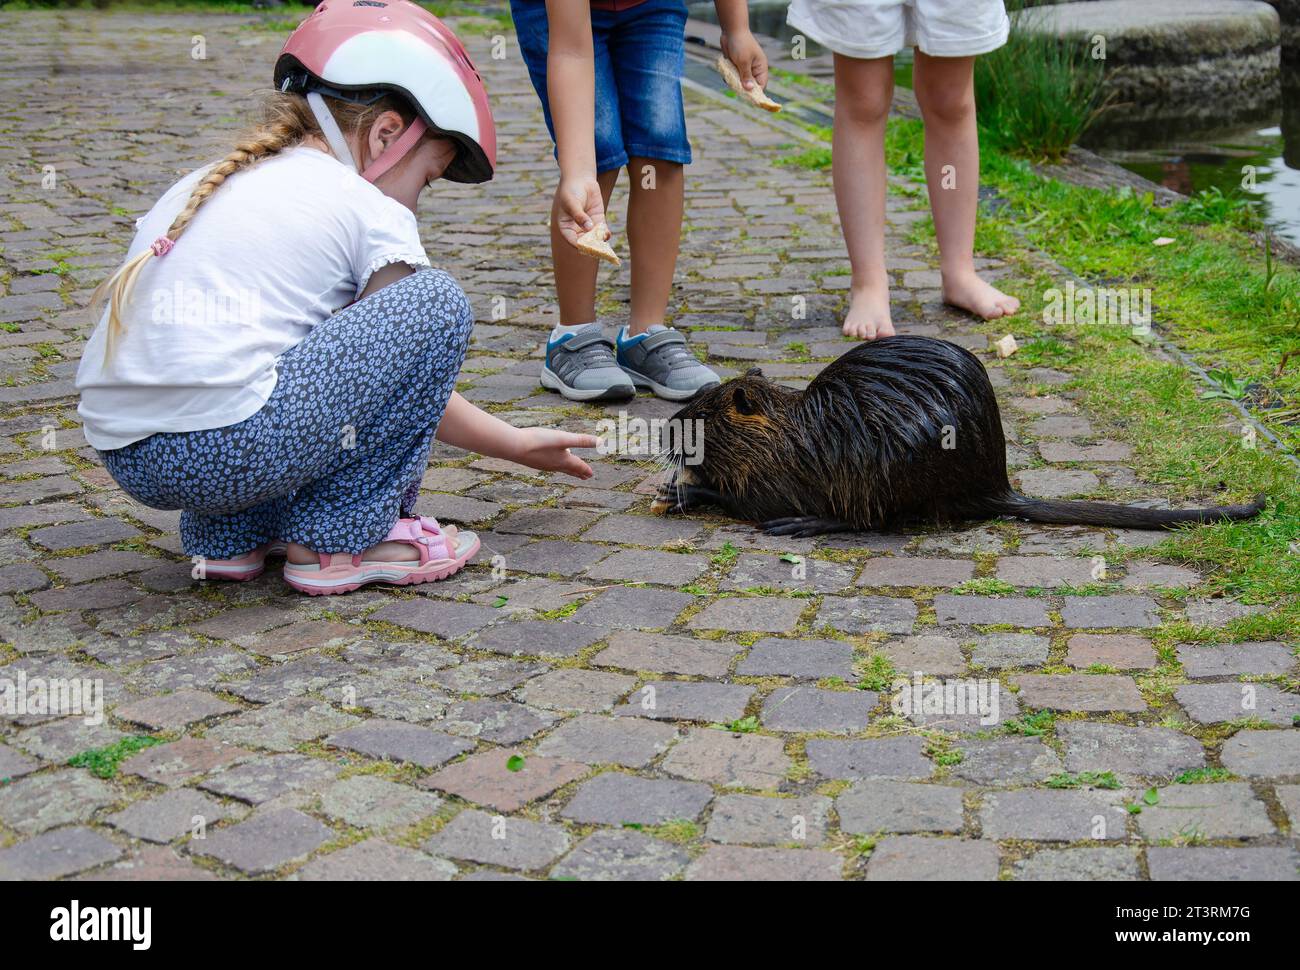 Los niños están alimentando a una rata de agua o nutria. Una chica lleva un casco. rat está sentado en el pavimento. Los pies de otros niños se pueden ver en backgro Foto de stock